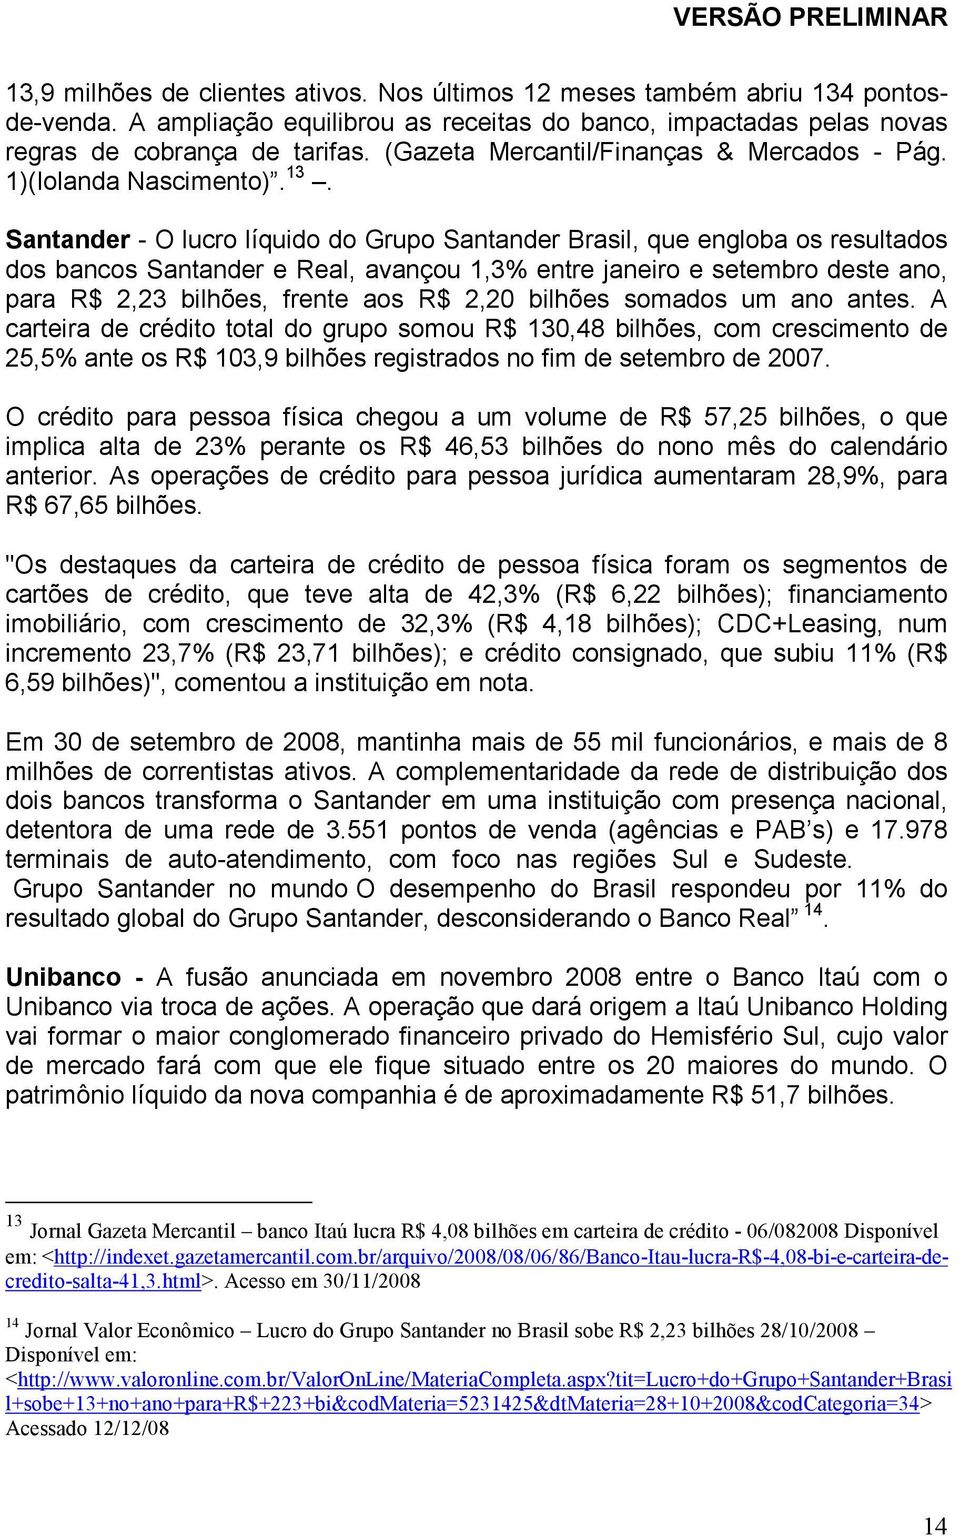 Santander - O lucro líquido do Grupo Santander Brasil, que engloba os resultados dos bancos Santander e Real, avançou 1,3% entre janeiro e setembro deste ano, para R$ 2,23 bilhões, frente aos R$ 2,20